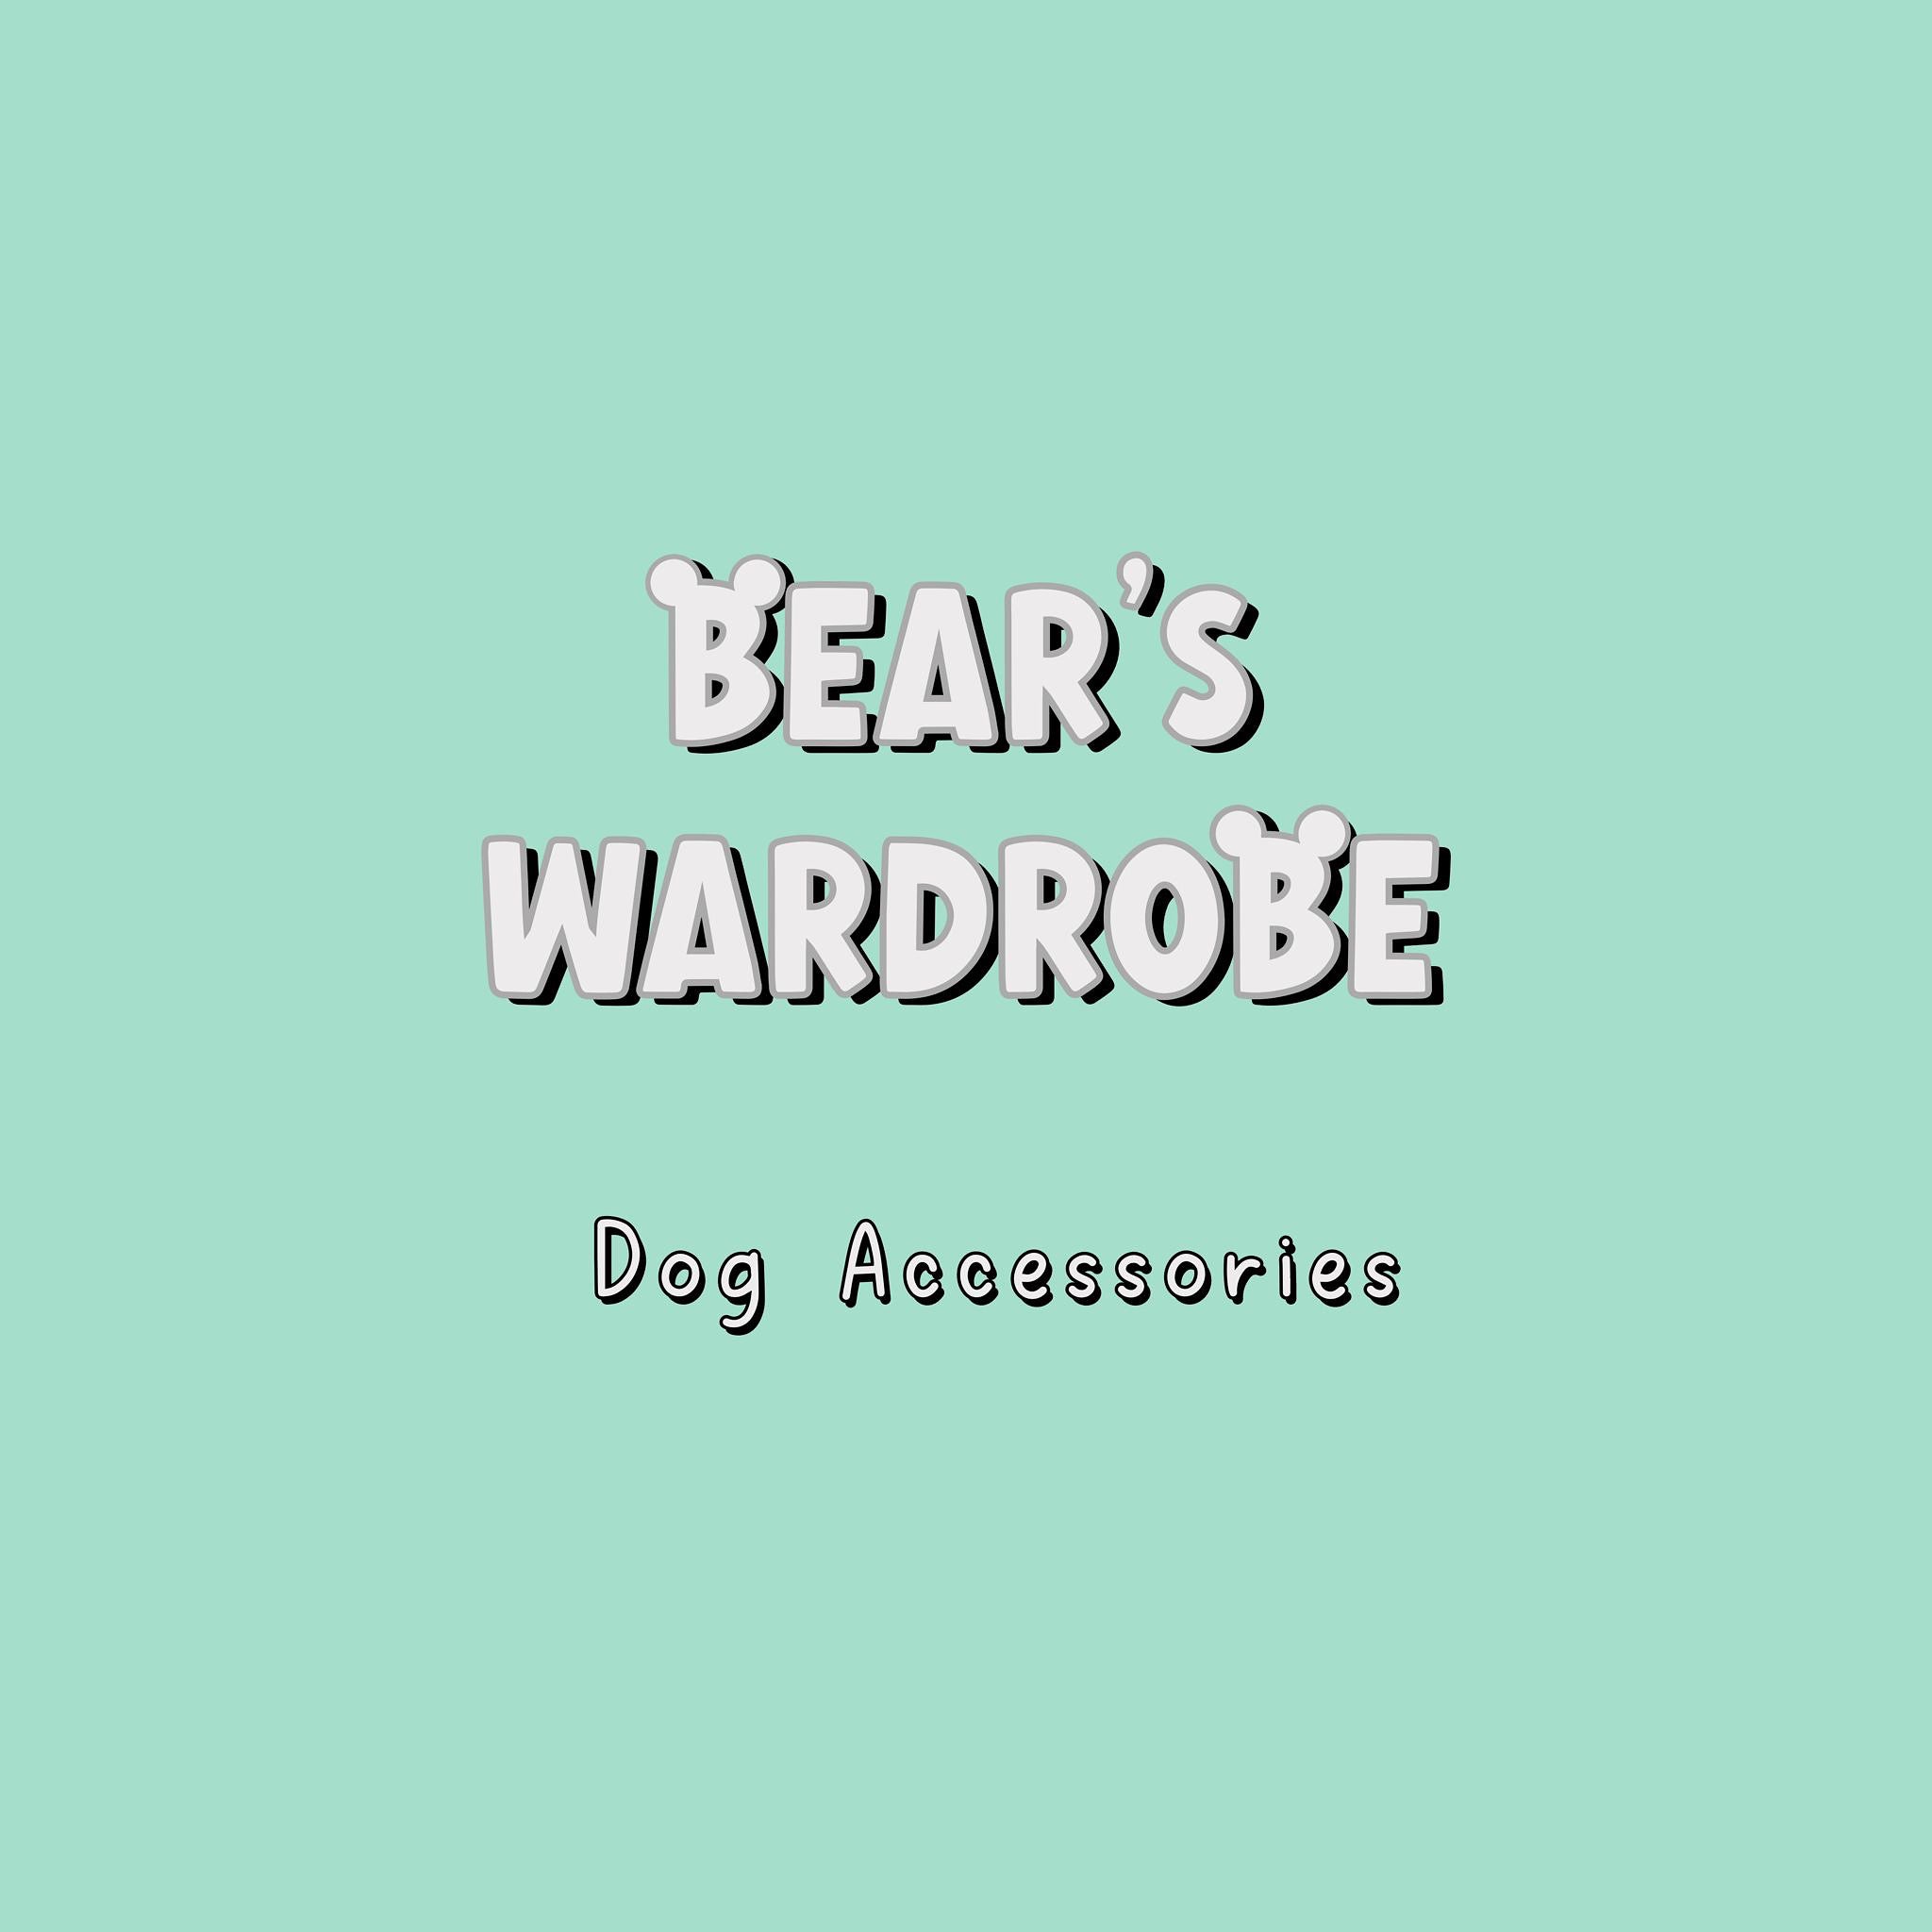 Bears Wardrobe